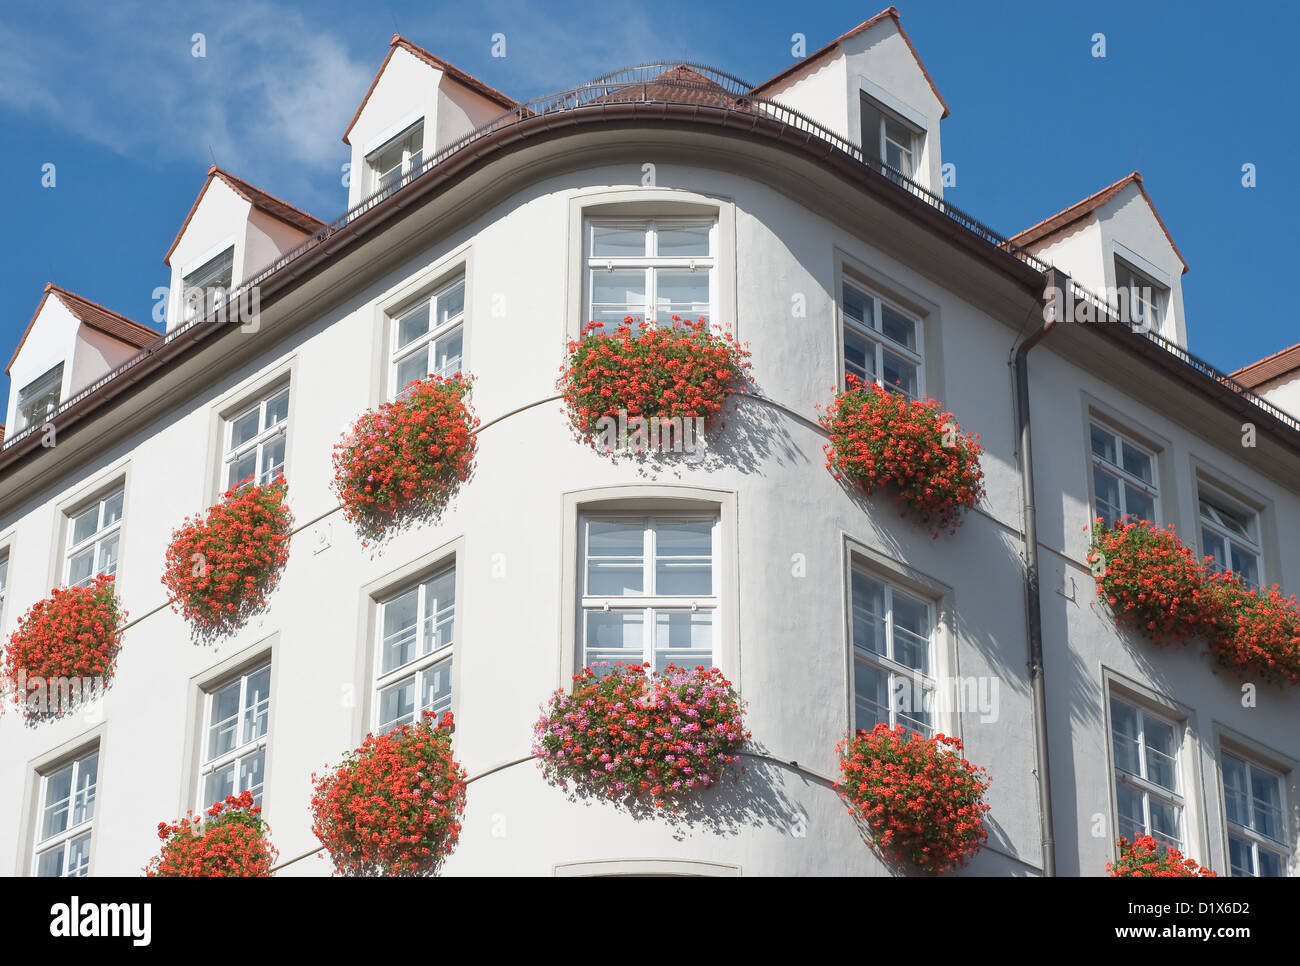 Traditionelle Architektur in München mit Geranien Blumen Stockfoto